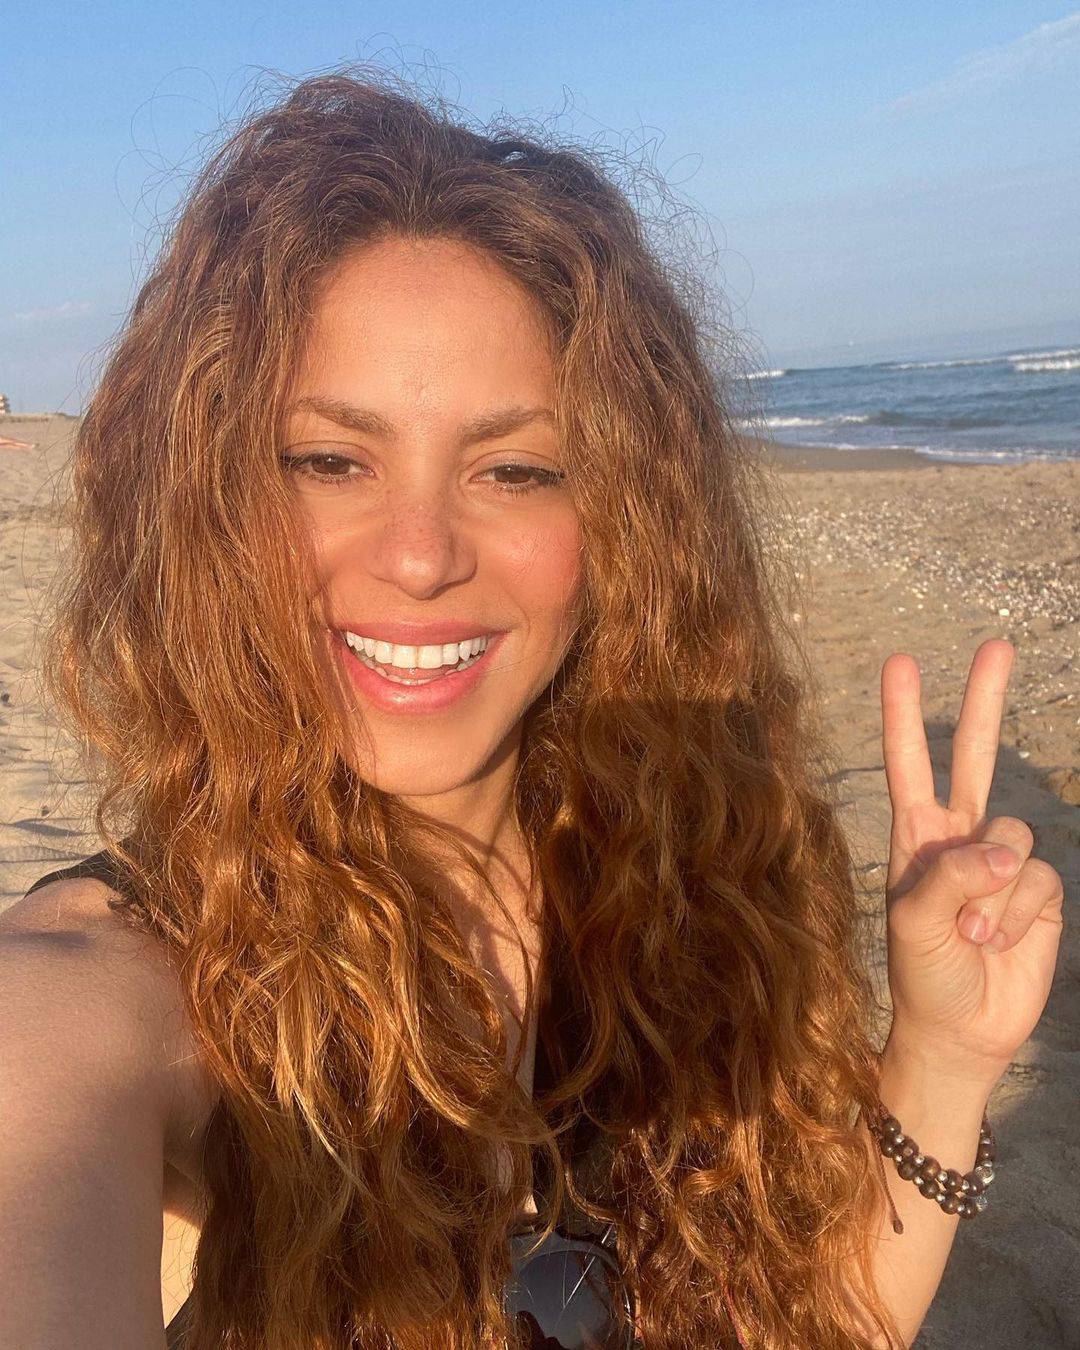 Shakira ide na sud zbog utaje poreza, pjevačica: Nisam kriva!